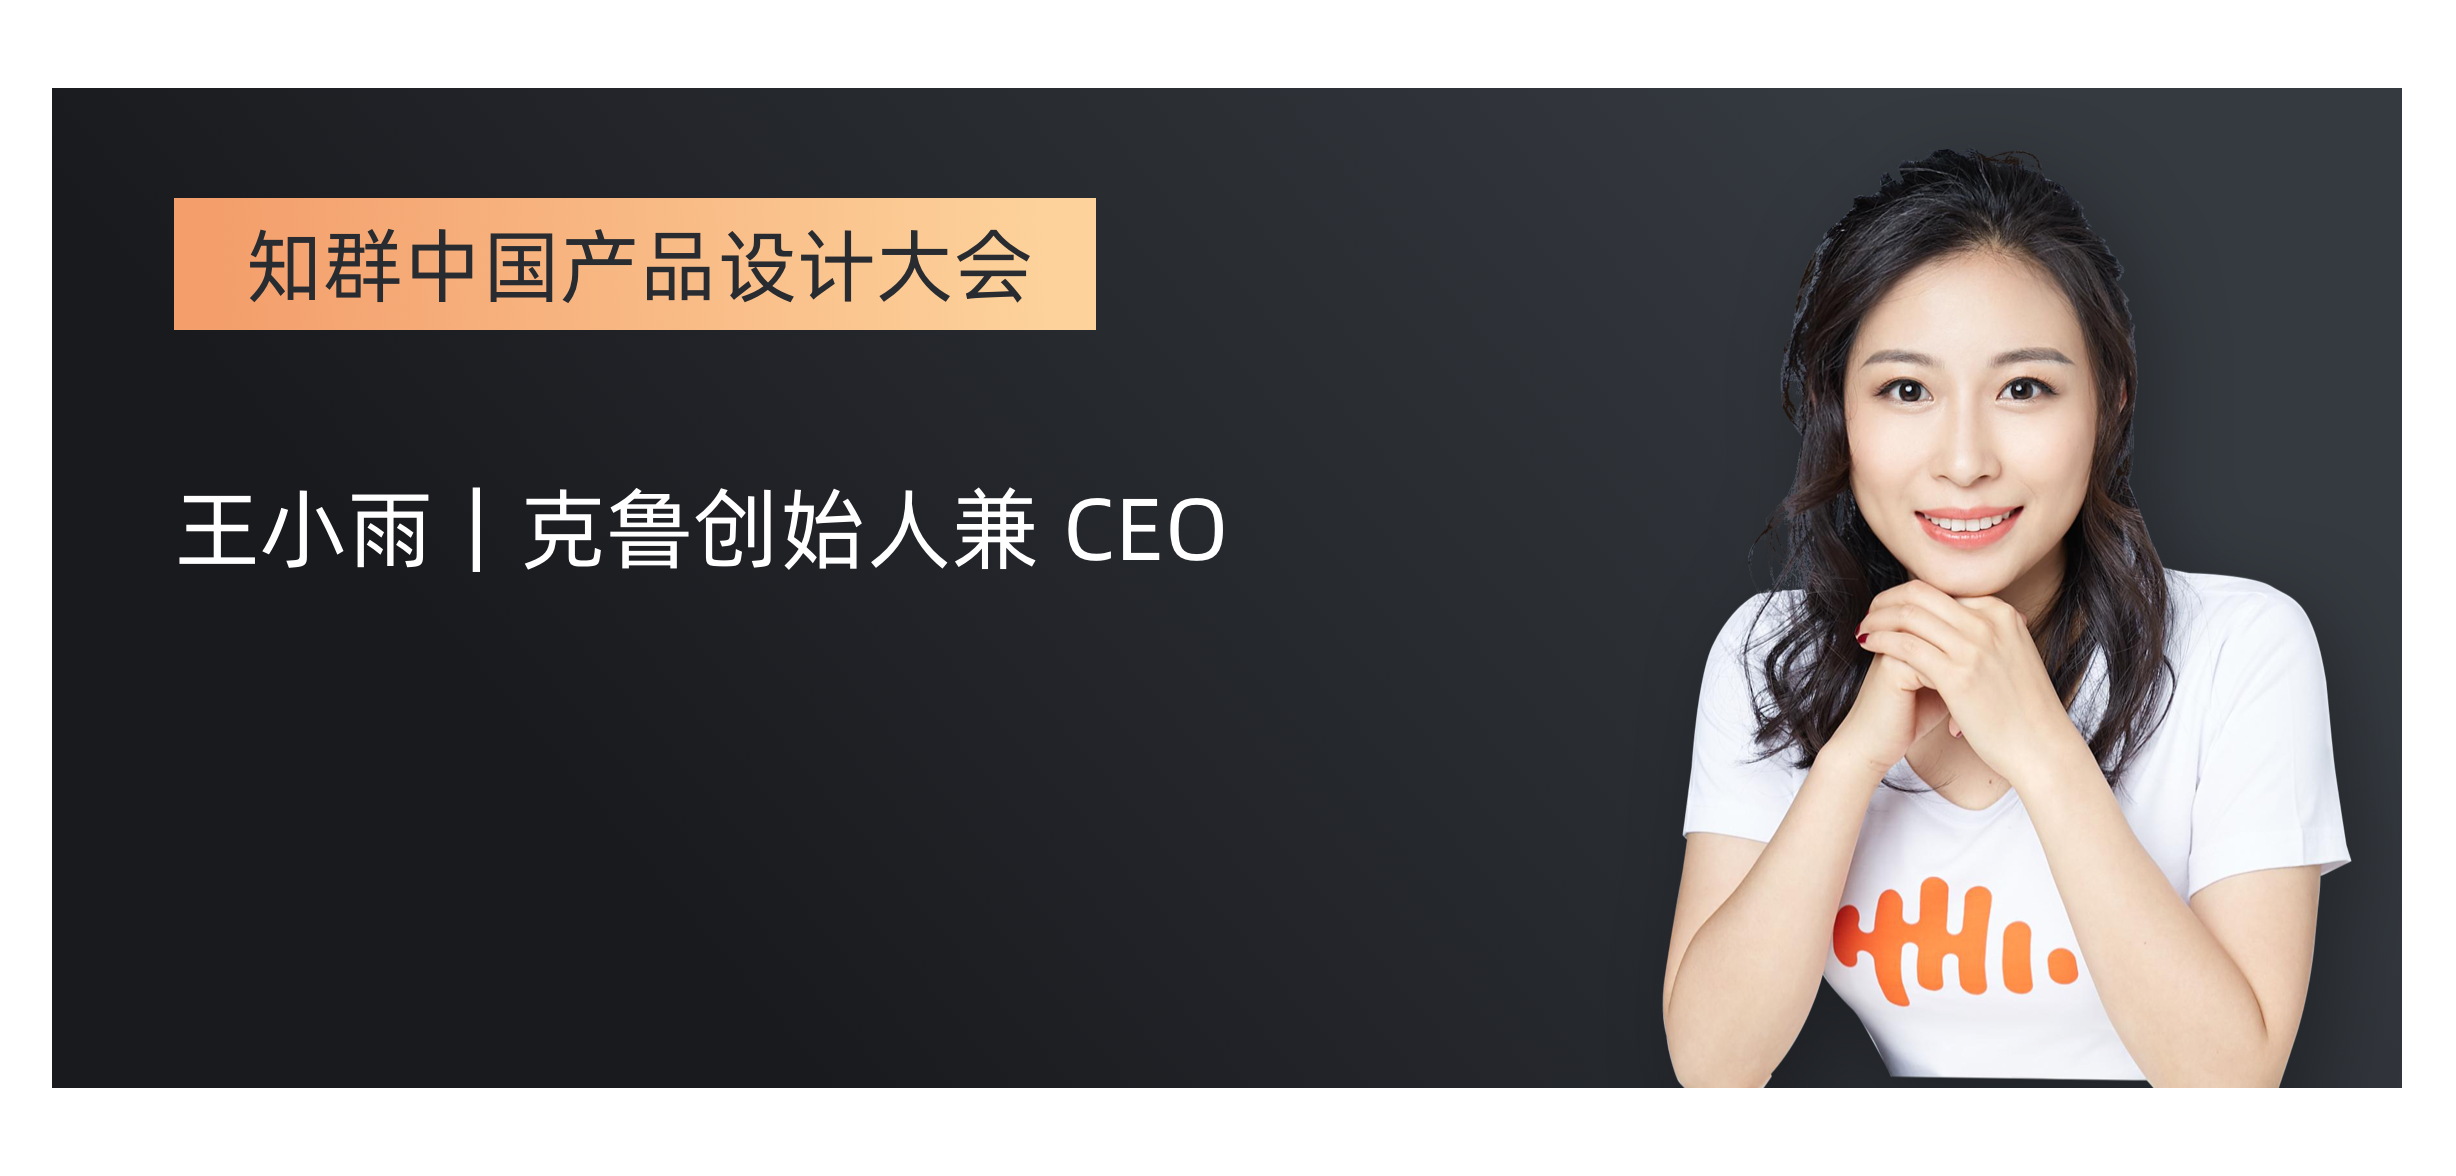 CastBox CEO 王小雨：一年增长 700 万全球用户，积累了这些经验 - 知乎